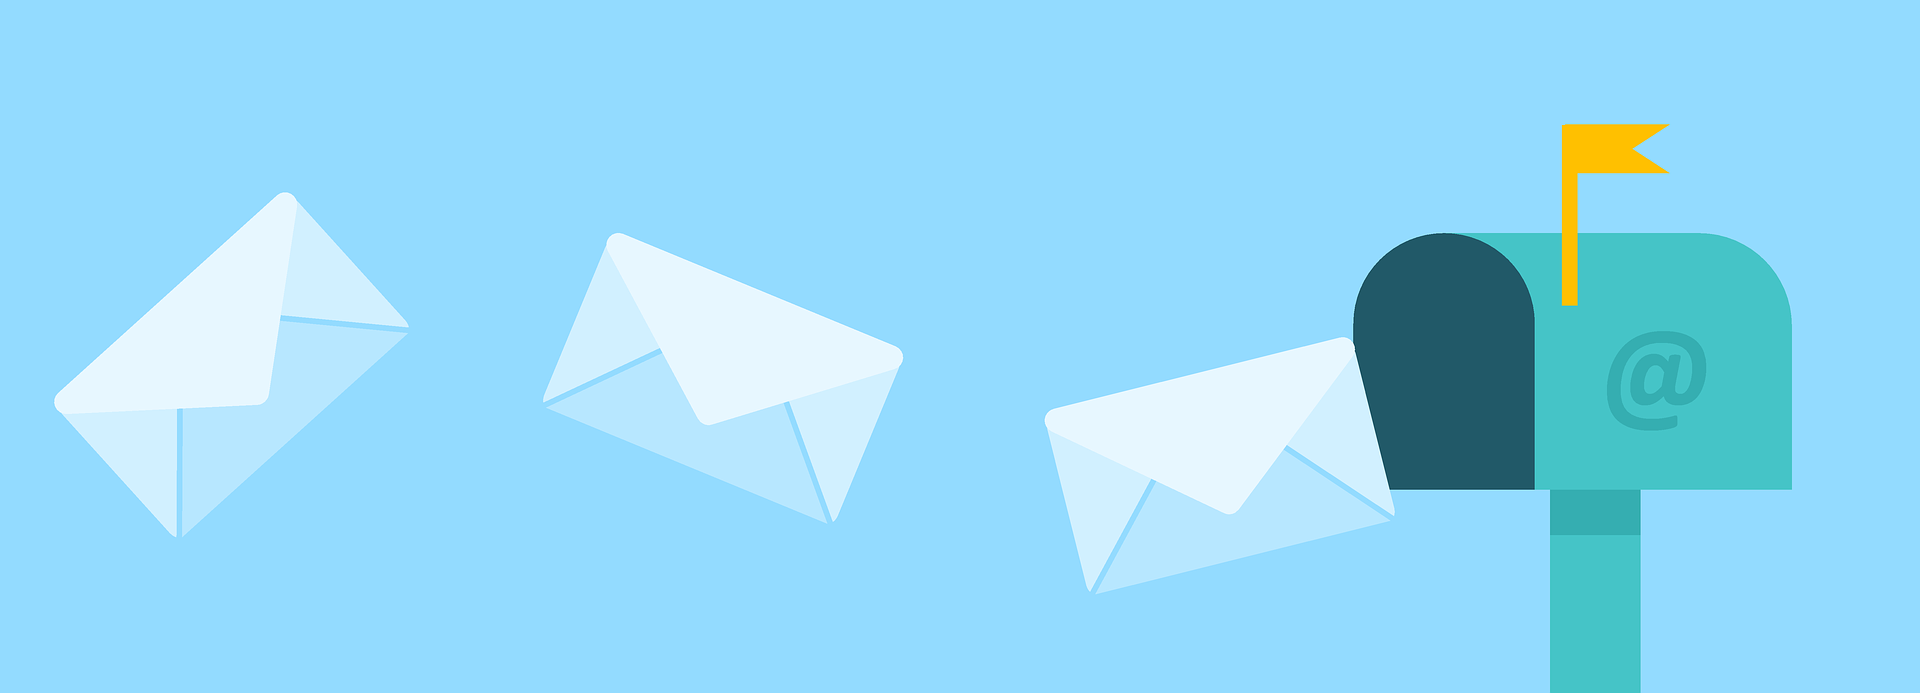 Briefe, die aus einer Mailbox fliegen